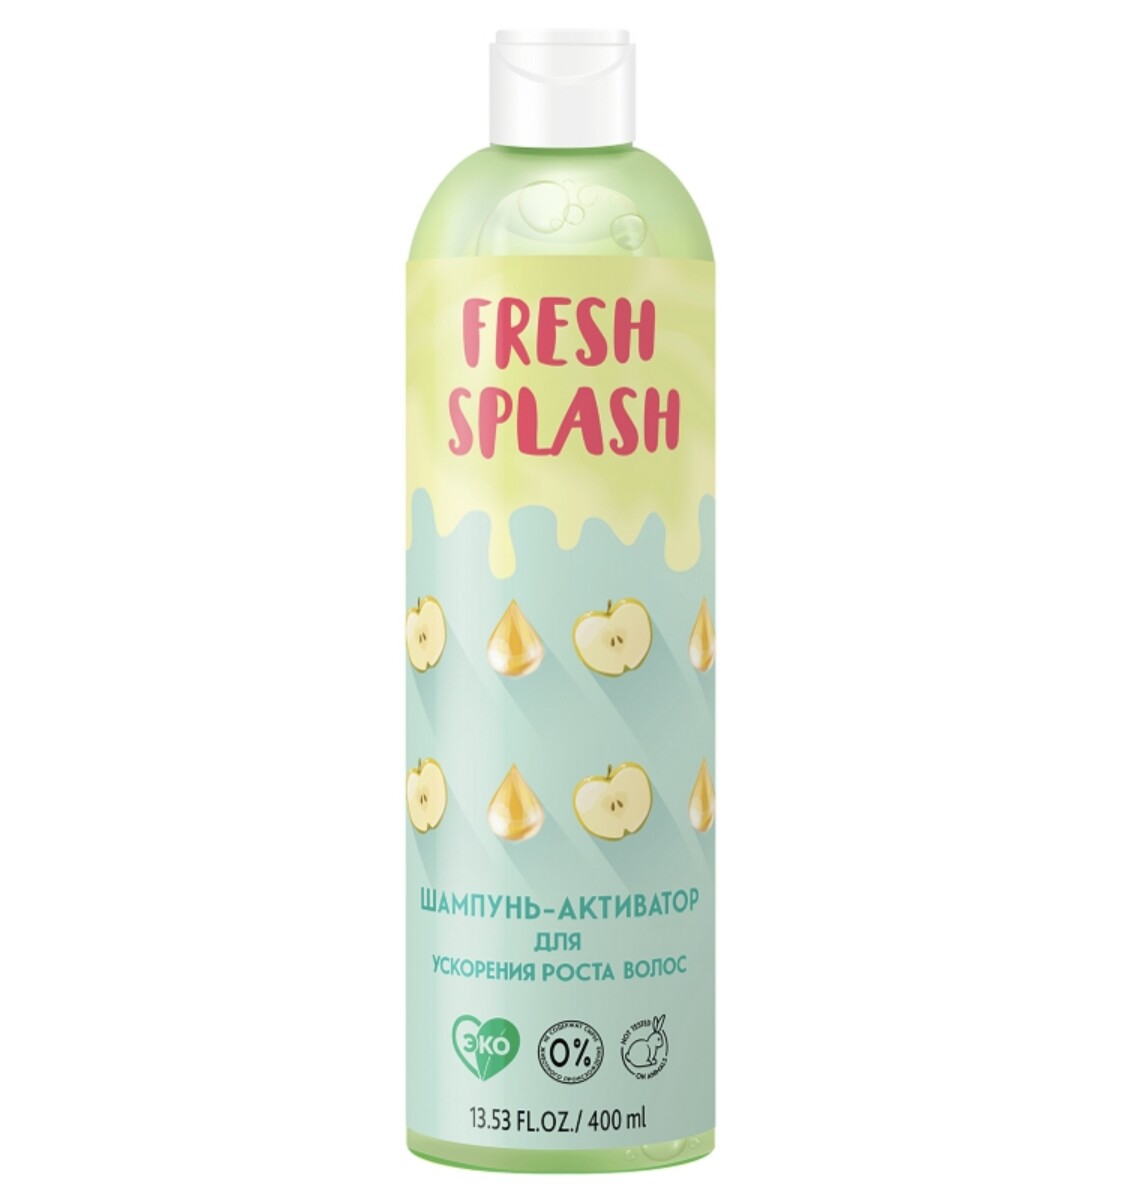 Fresh splash шампунь-активатор для ускорения роста волос, 400 мл сыворотка для укрепления и роста волос floresan яичная 30 мл